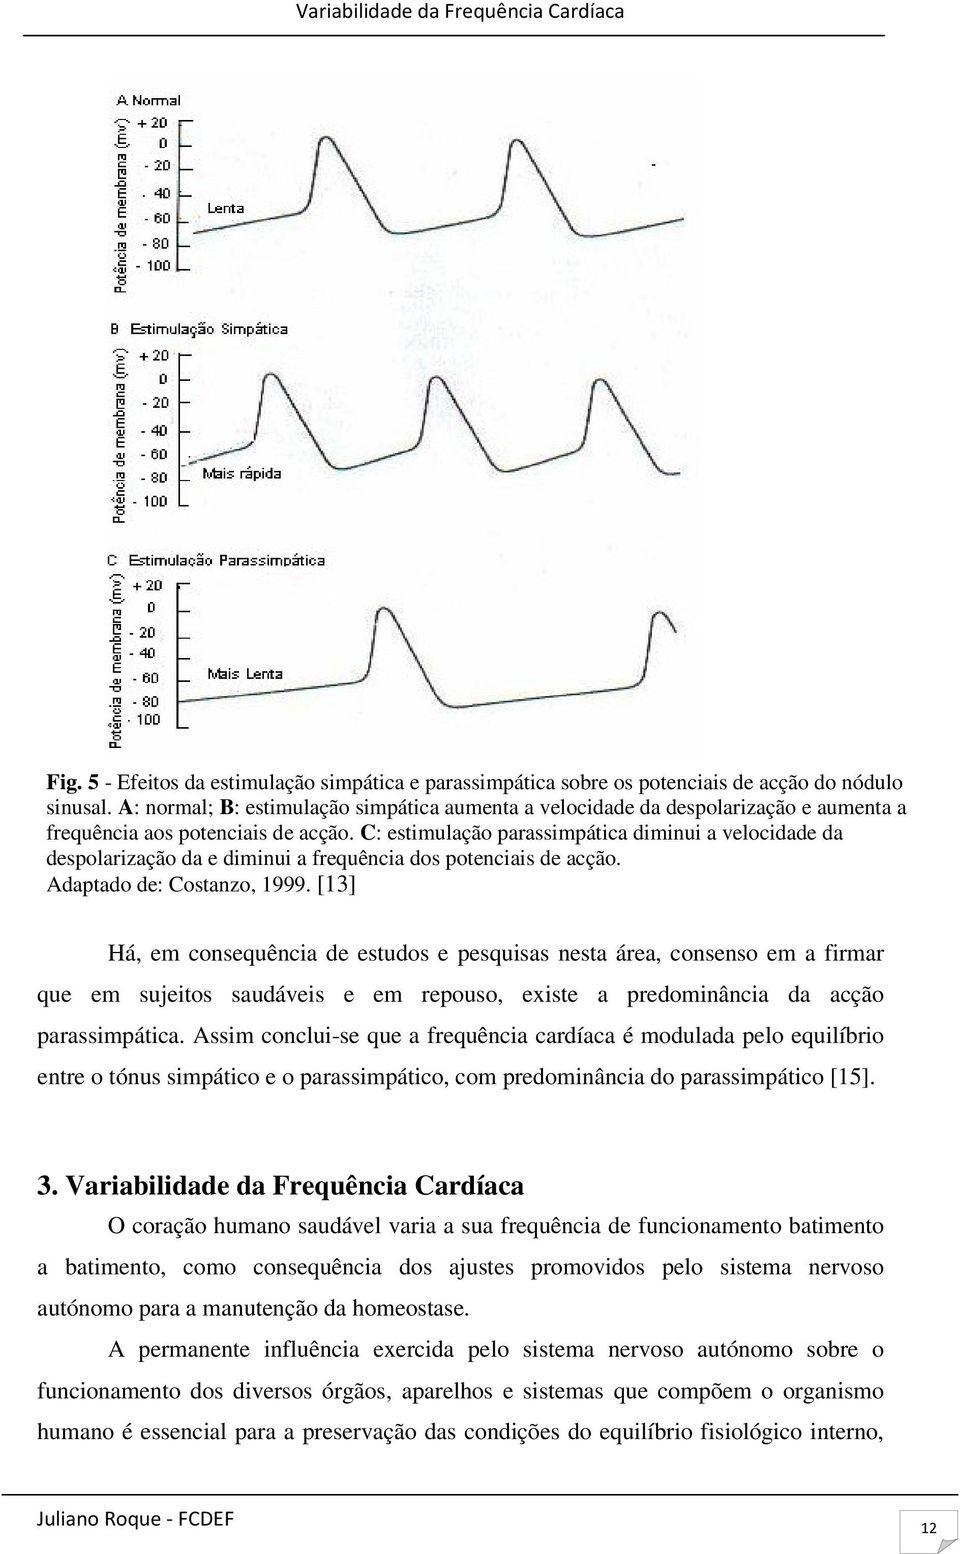 C: estimulação parassimpática diminui a velocidade da despolarização da e diminui a frequência dos potenciais de acção. Adaptado de: Costanzo, 1999.